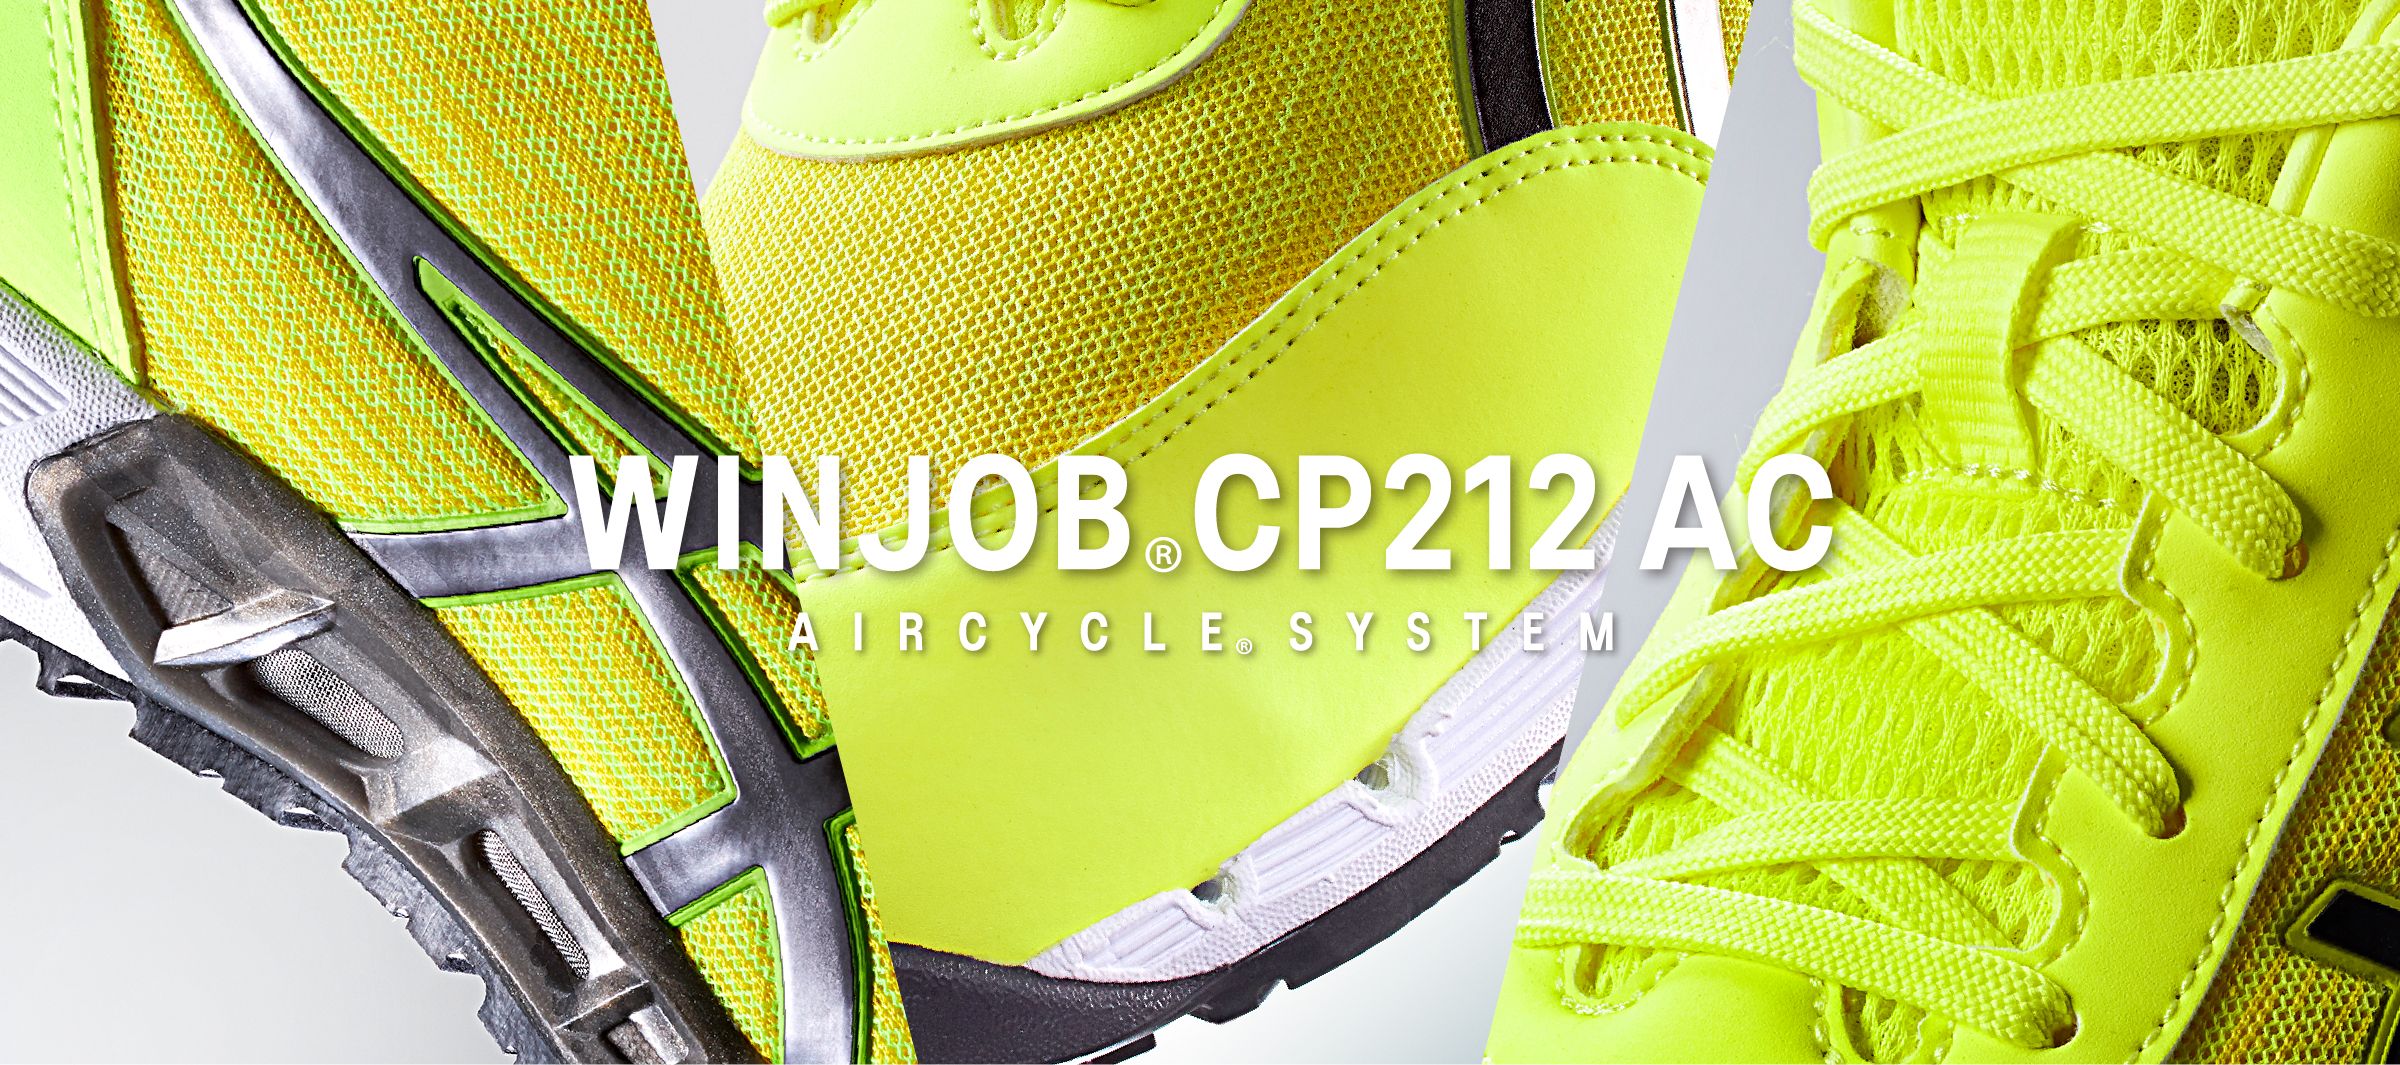 ウィンジョブ®CP212 AC 500足限定カラーアシックス安全靴